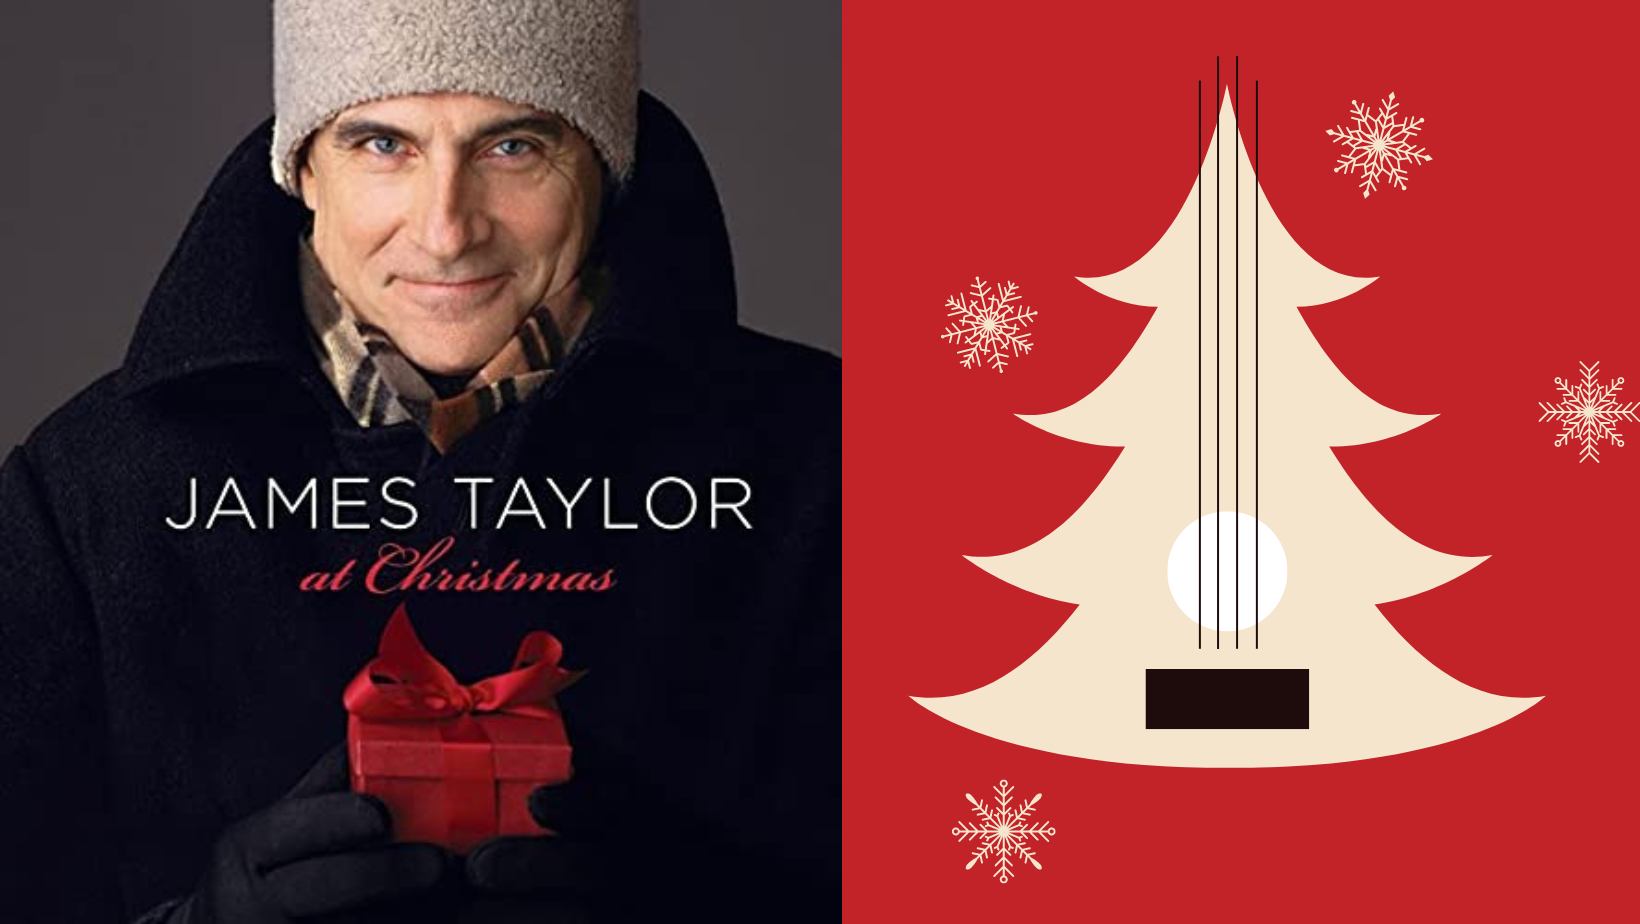 Jame Taylor's New Christmas Album "At Christmas"